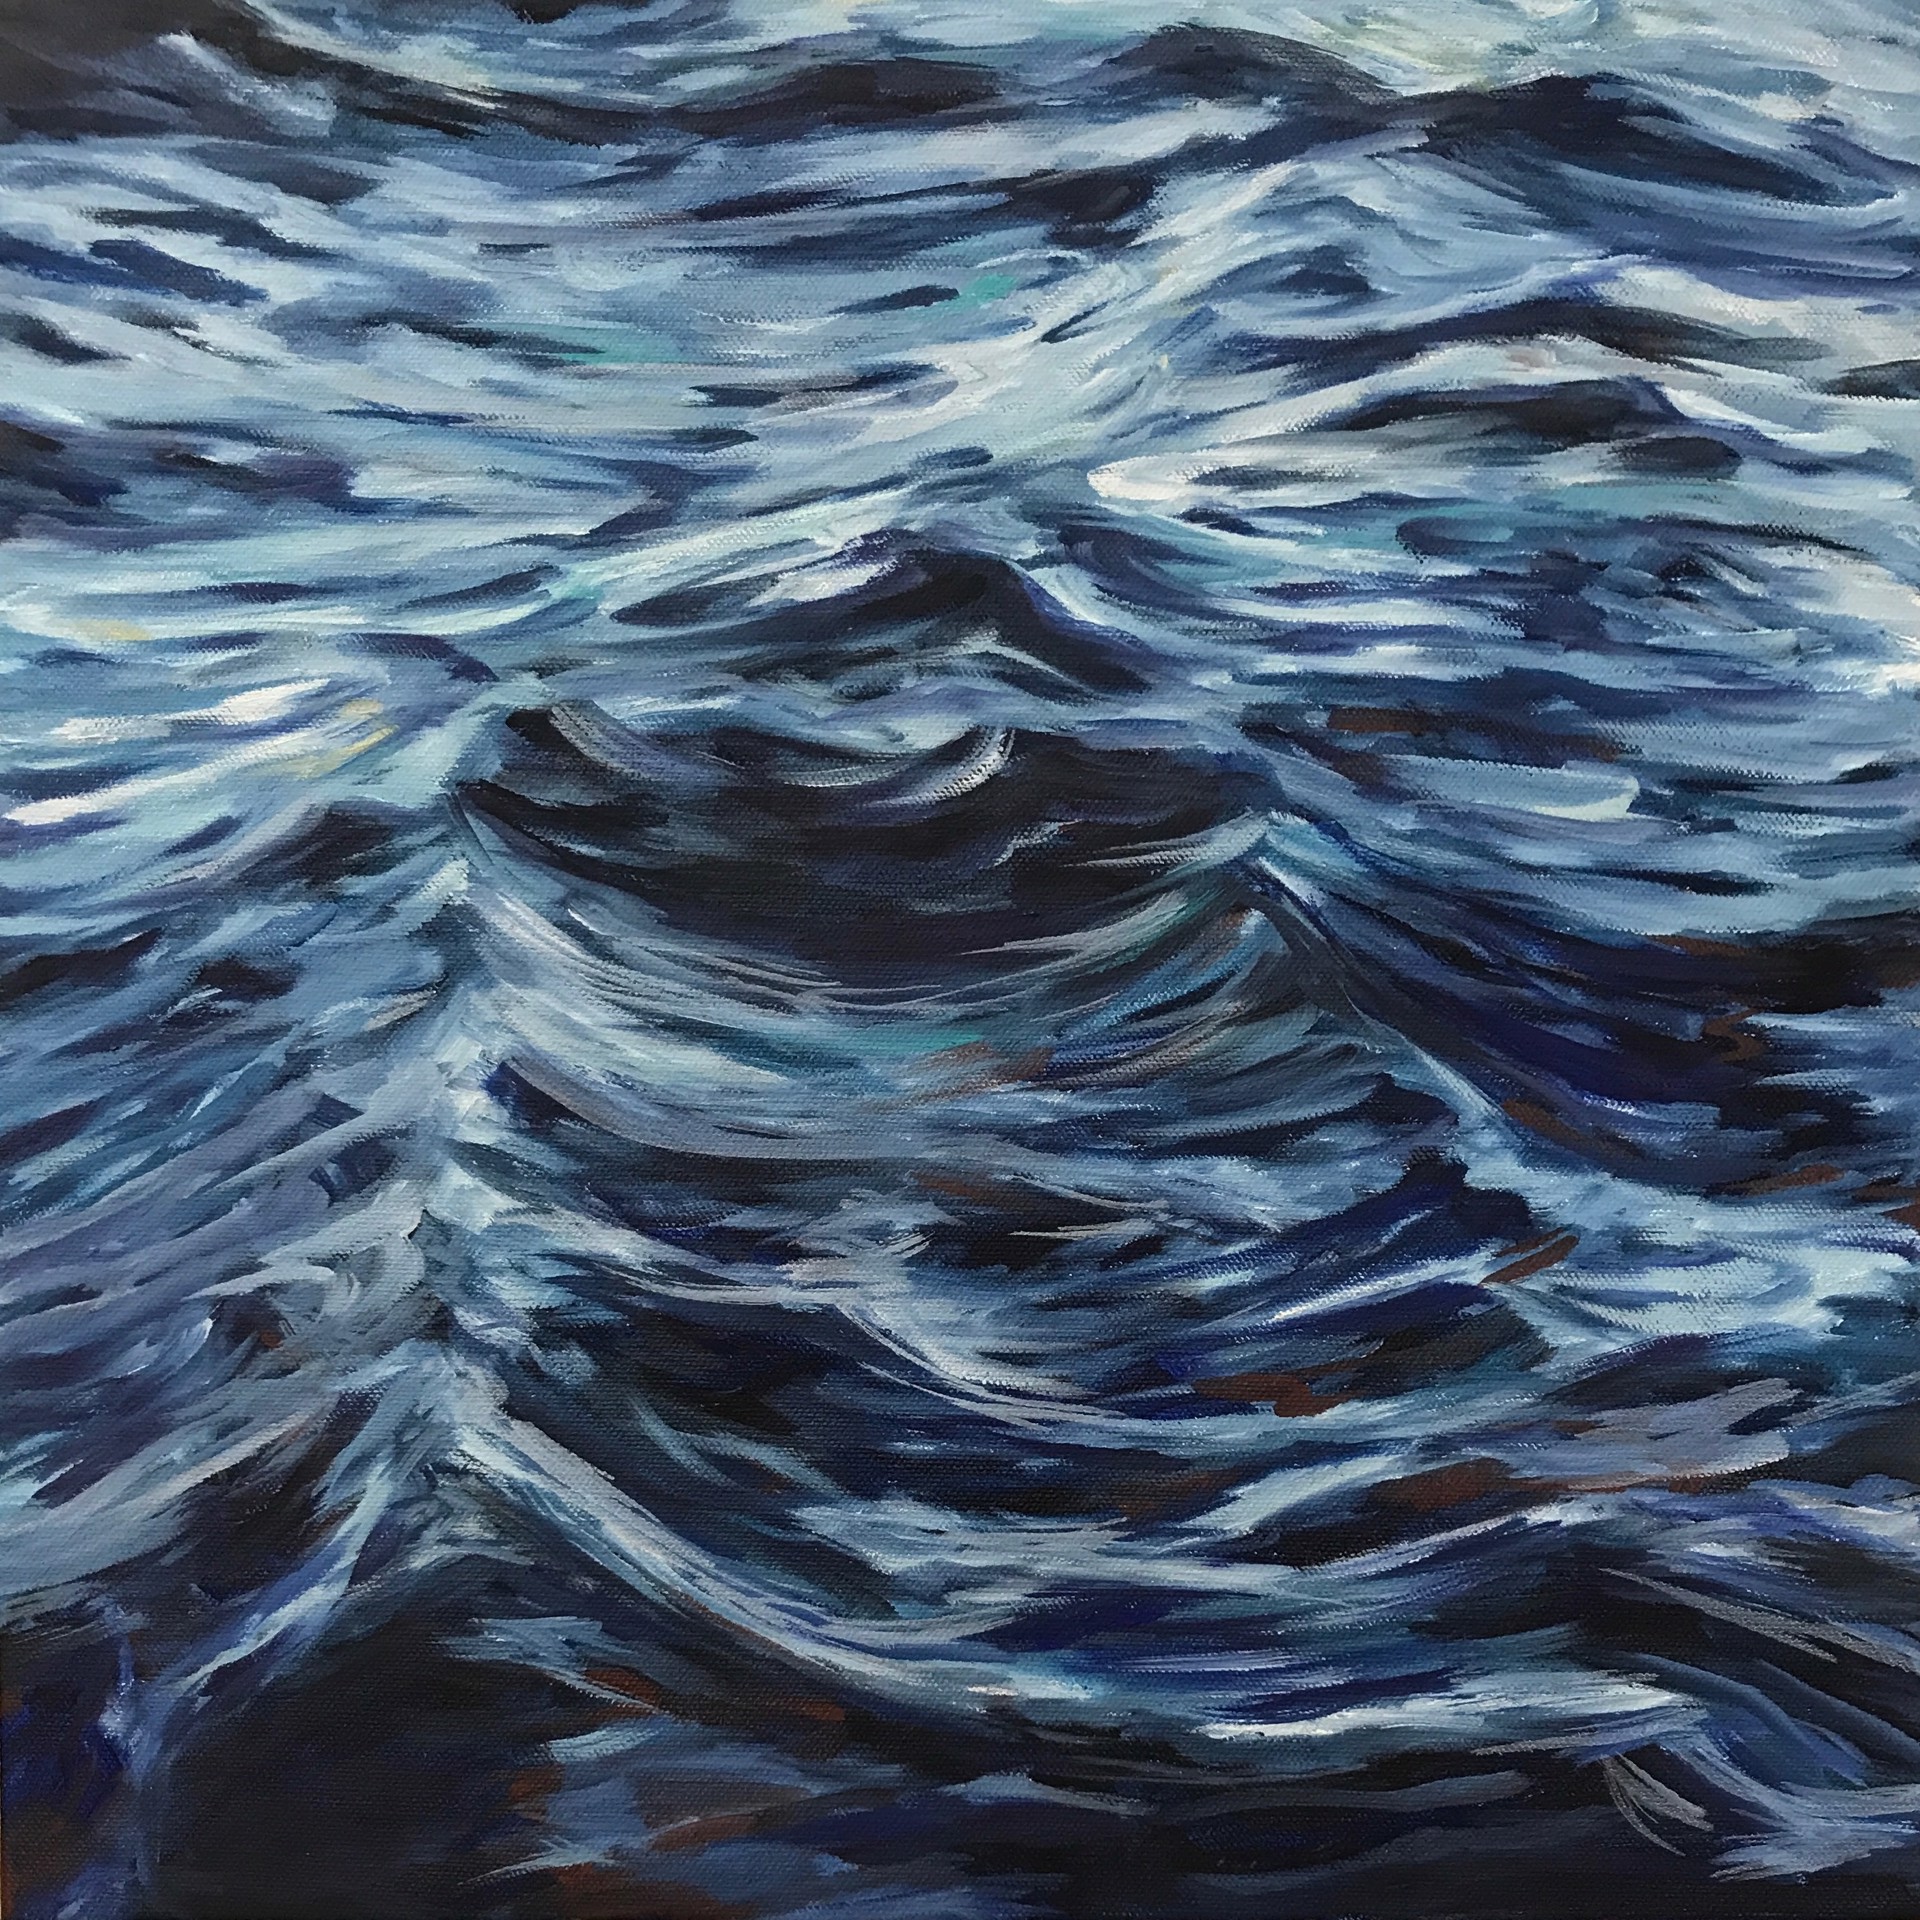 Lahaina Waves 6 by Valerie Eickmeier